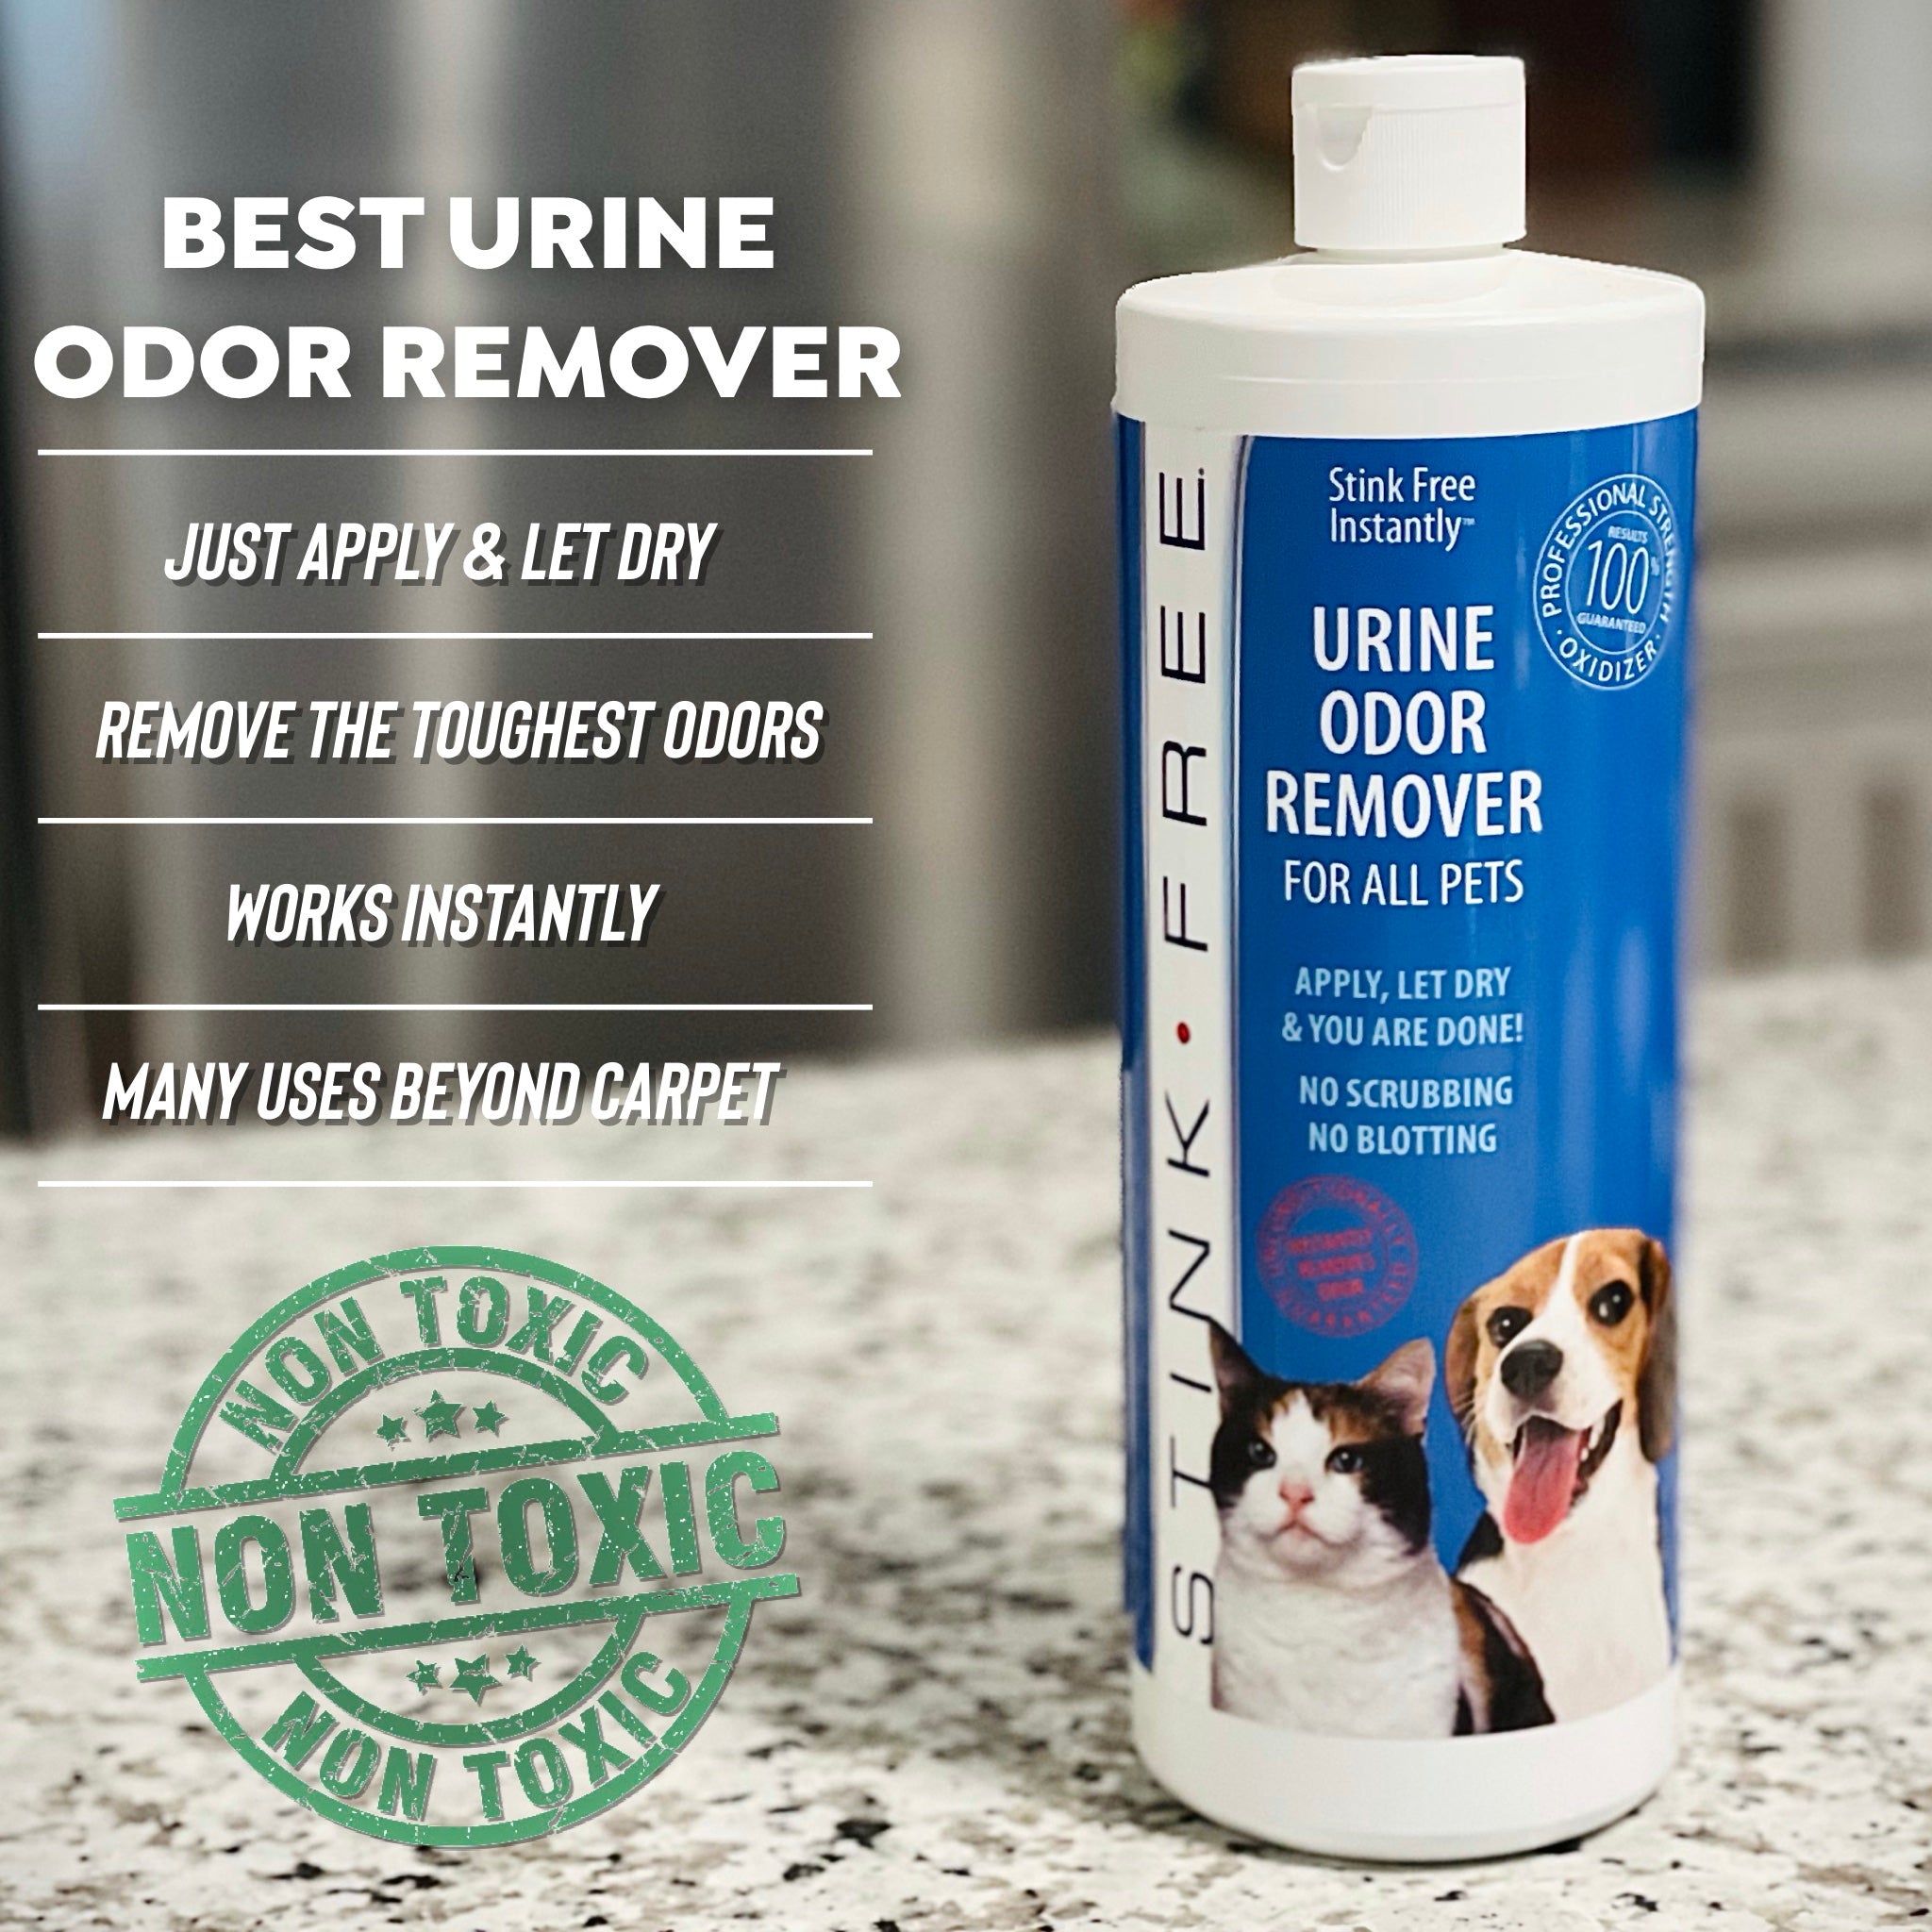 Stink Free - Instant Urine Odor Remover For Pet - 1 Quart